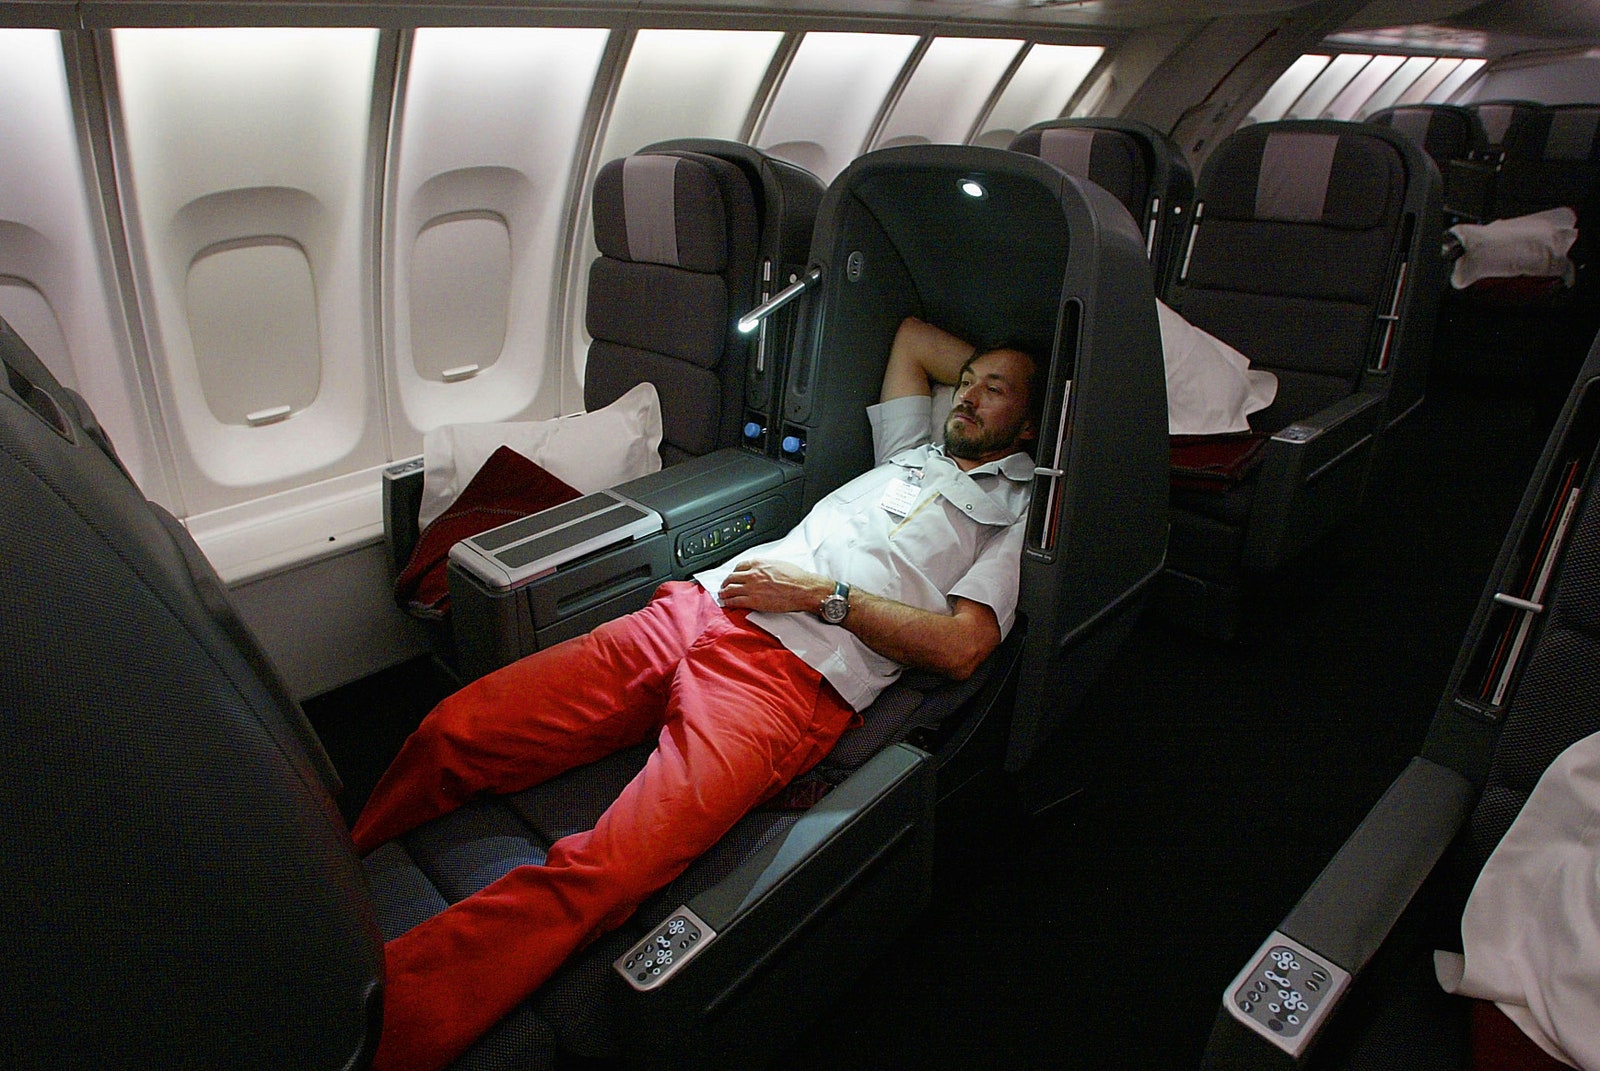 В 2001 году авиакомпания Qantas привлекла дизайнера к разработке раскладных кресел для салона бизнескласса. А спустя...